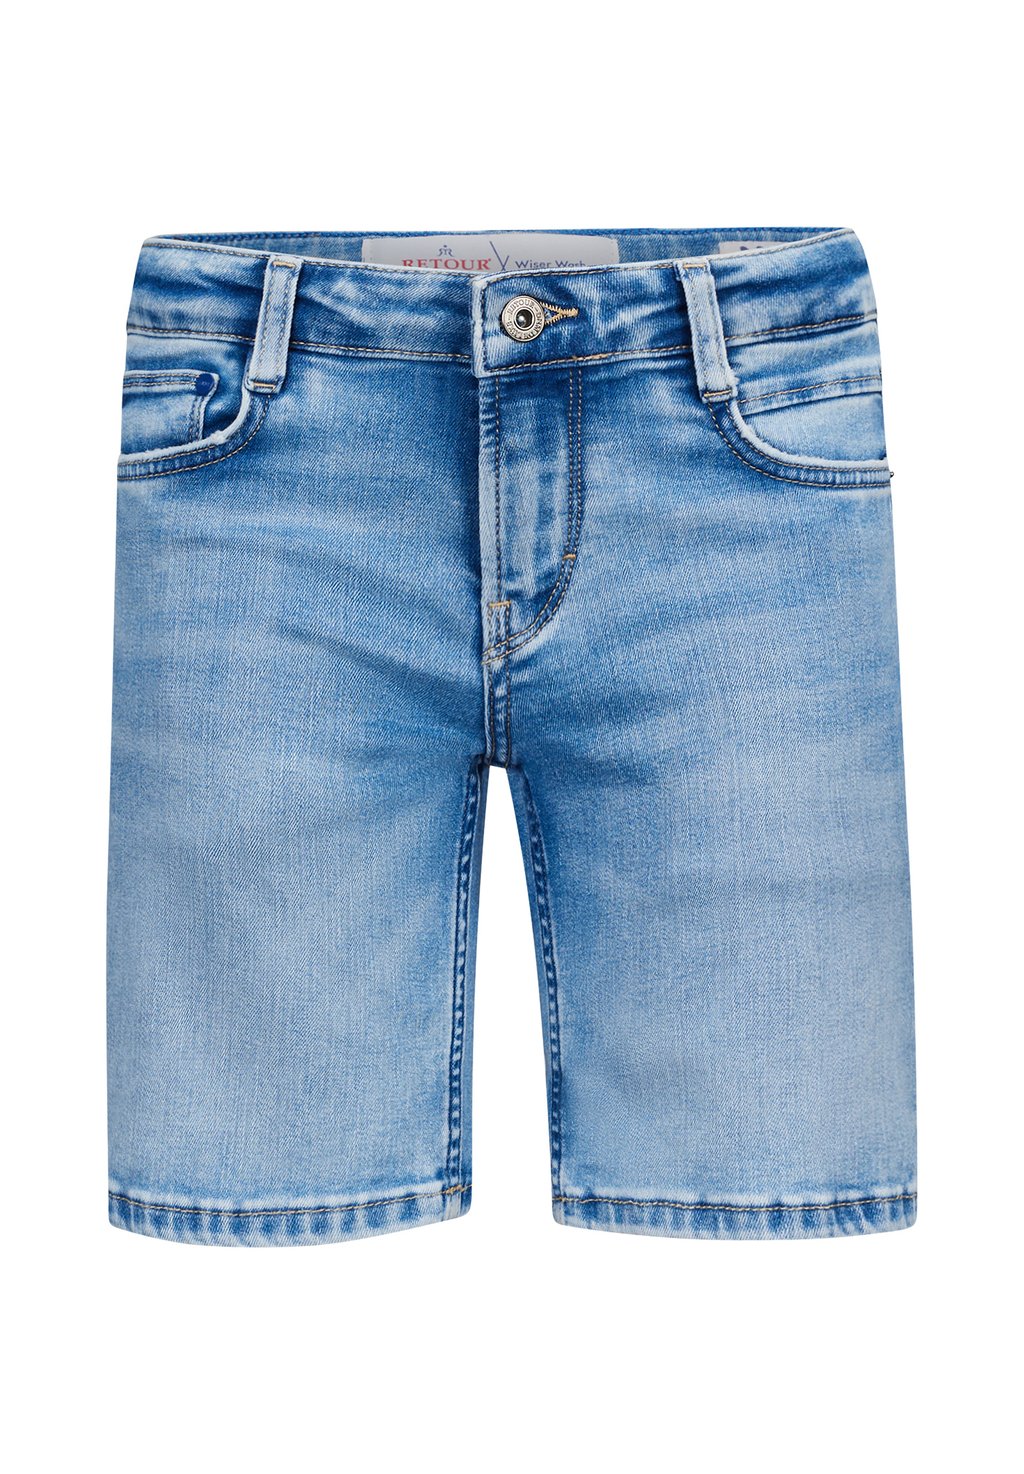 Джинсовые шорты REVEN VINTAGE Retour Jeans, цвет light blue denim